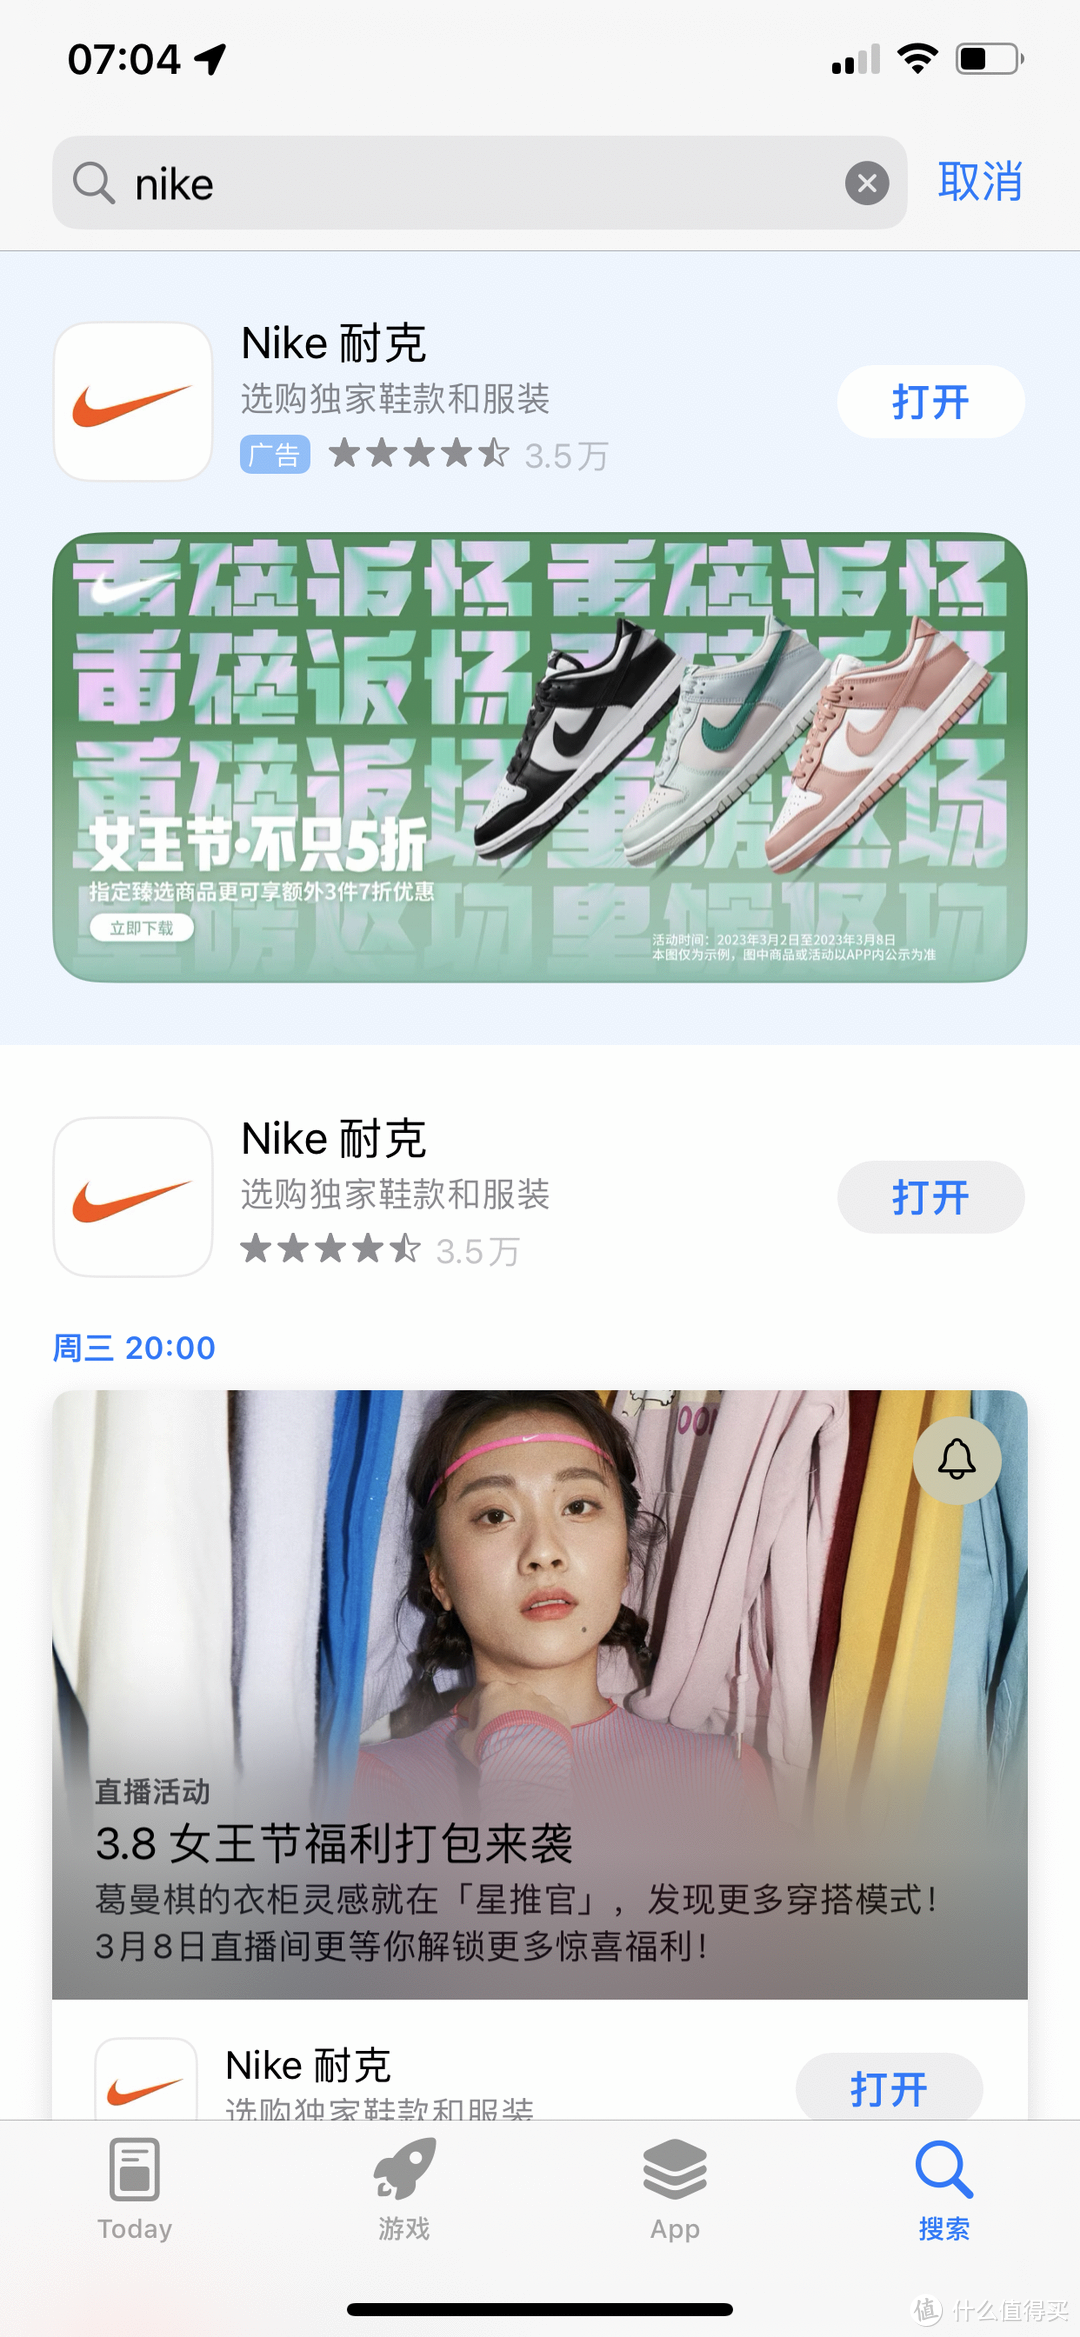 Nikedunk 熊猫鞋，官网正价699-749能买到，第三方现在已经跌破原价了！